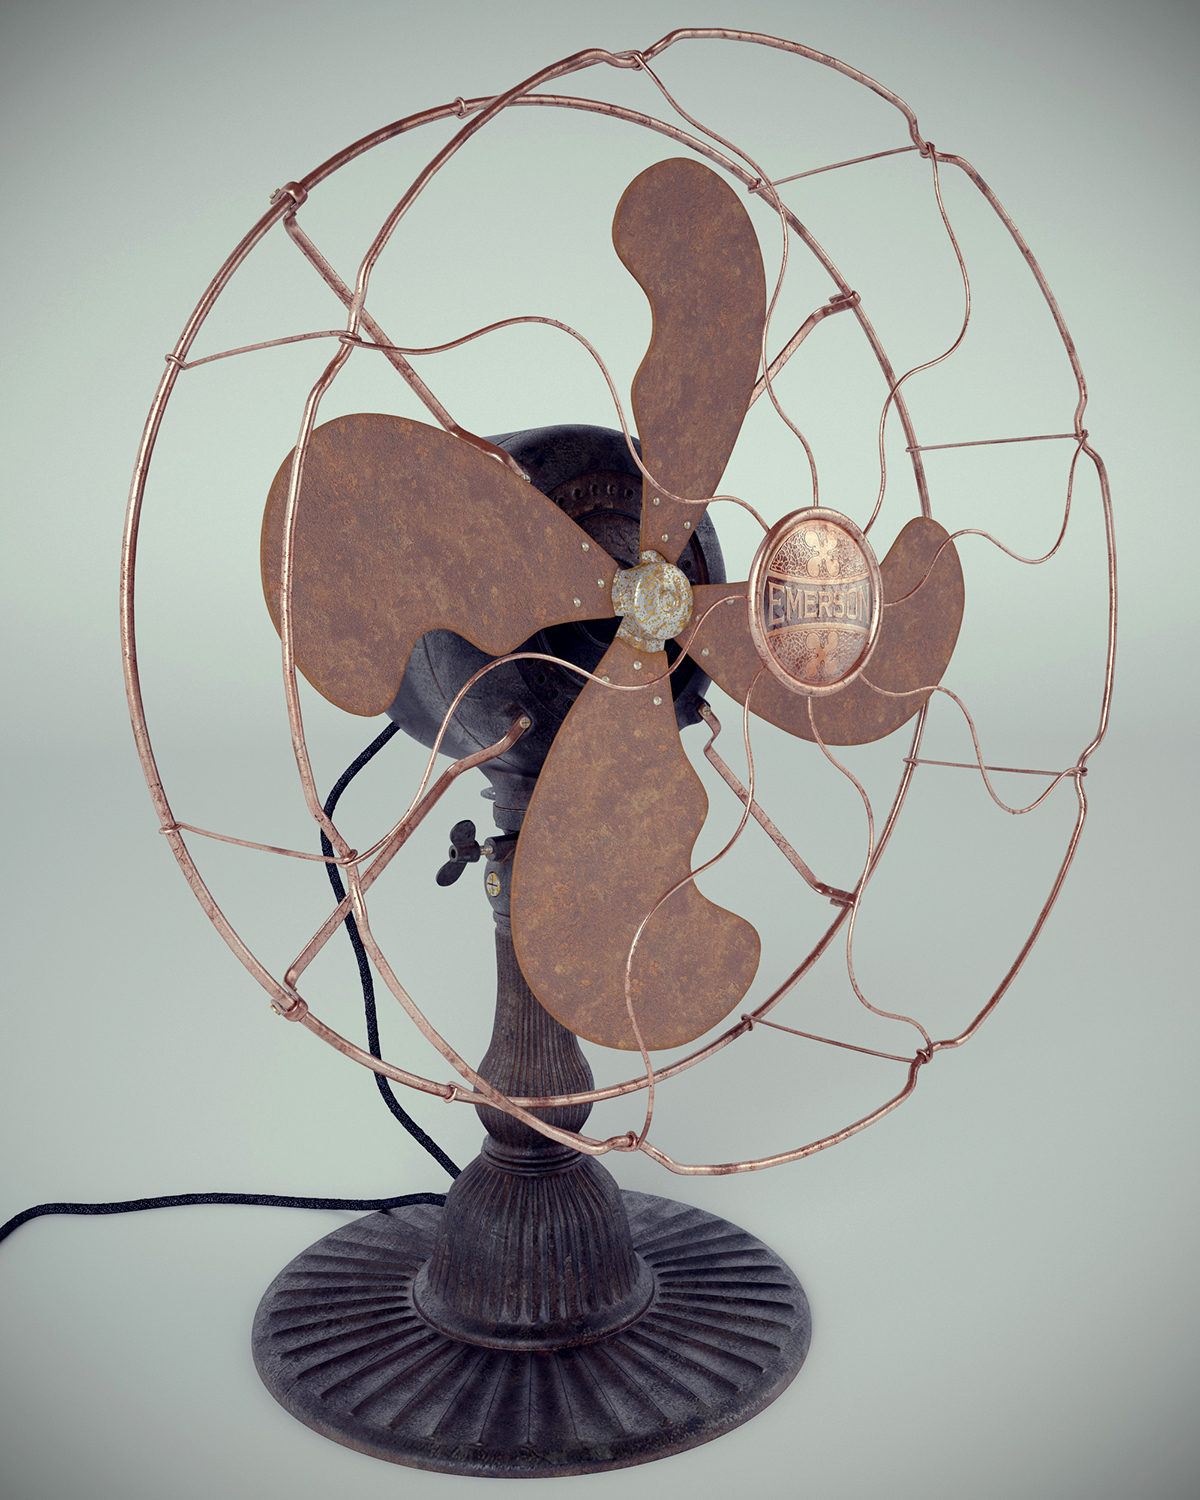 Emerson 12646 electric fan